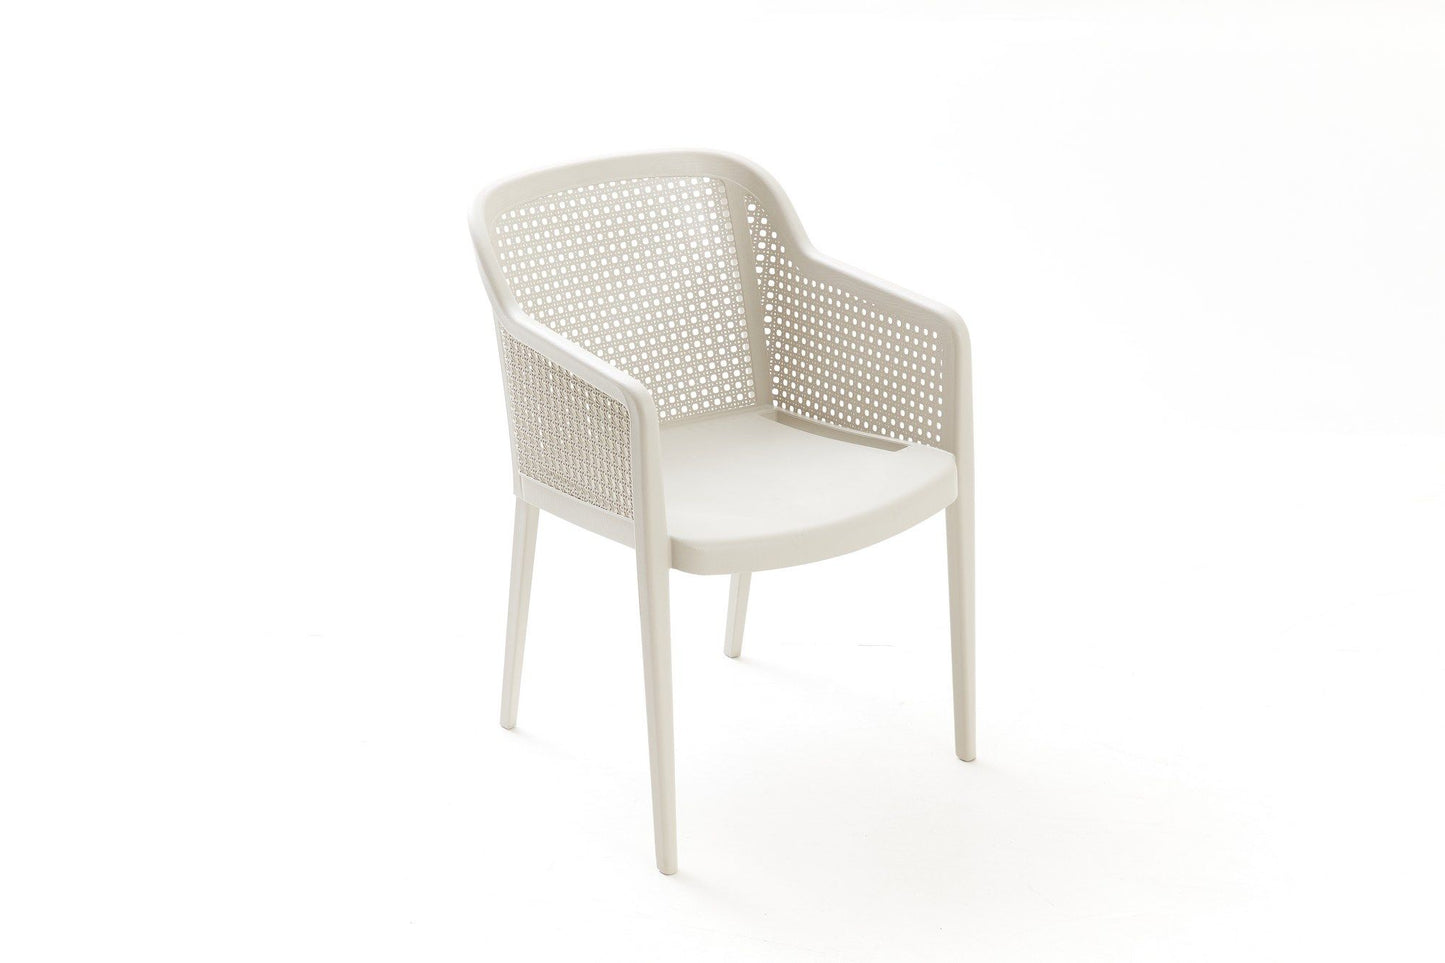 Saka Garden - Garden Table & Chairs Set (7 Pieces)